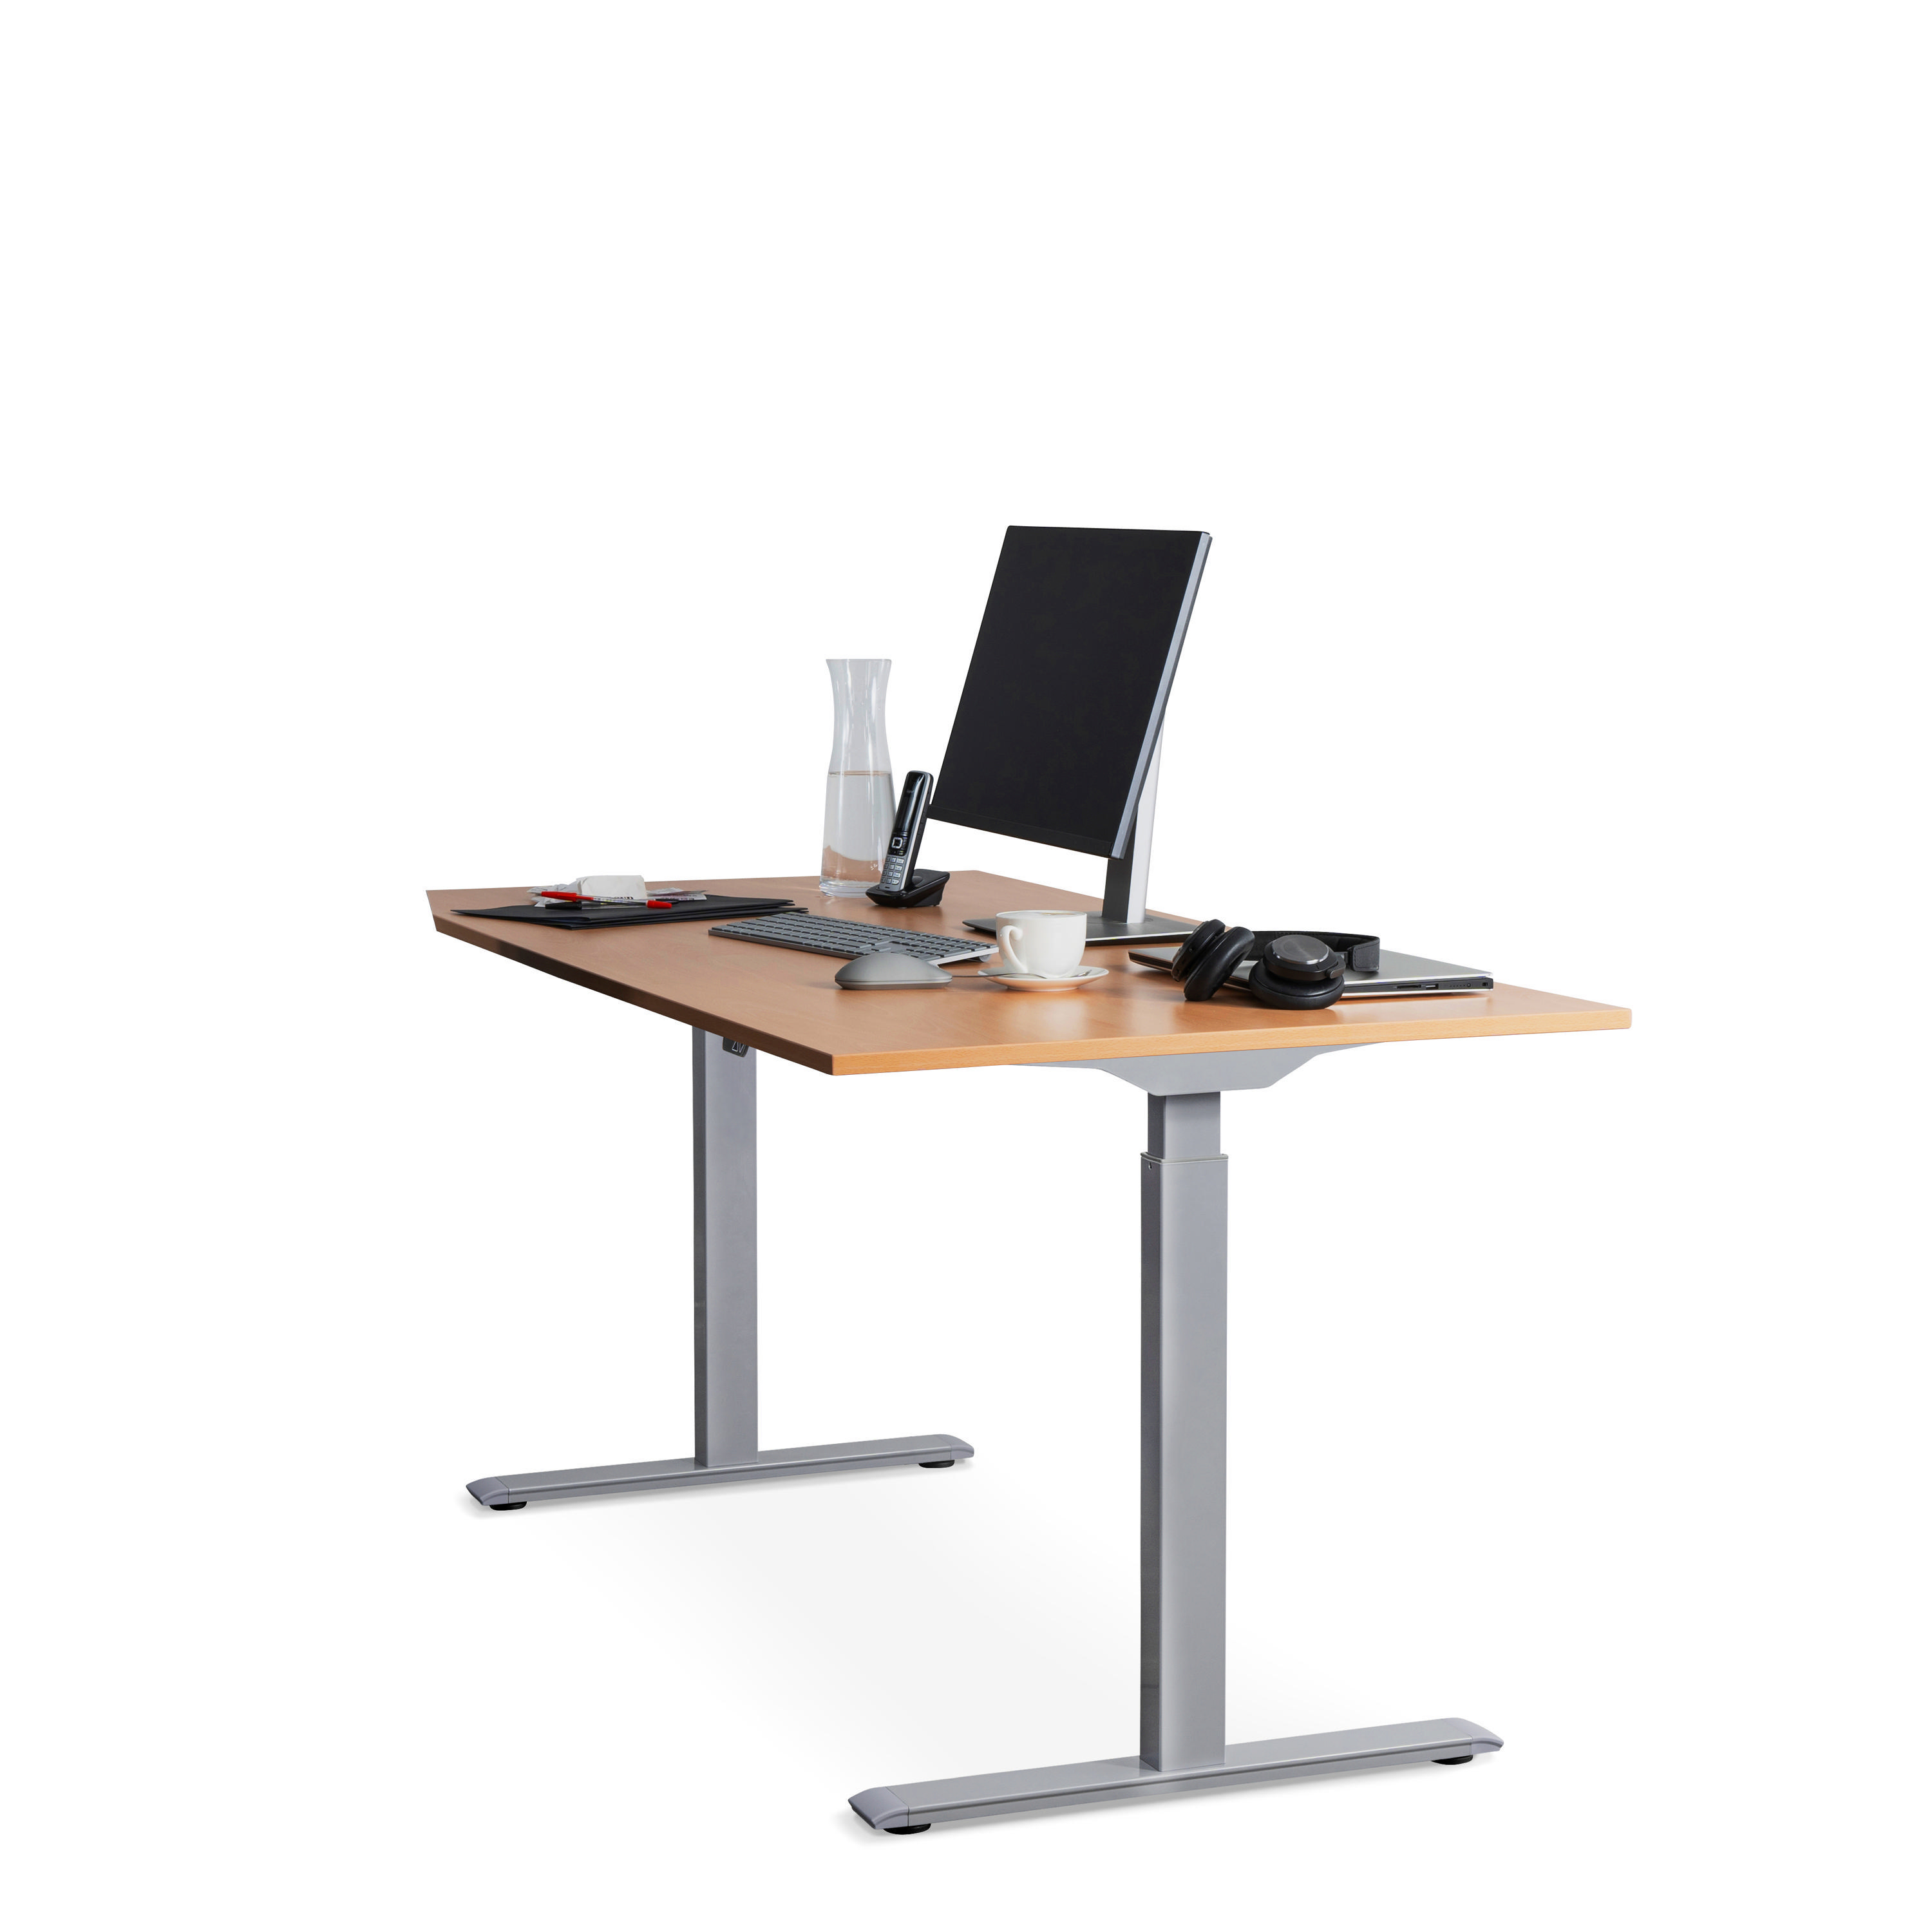 Steh-Sitz 160x80 cm elektronisch Tischplatte: höhenverstellbarer Tischgestell: Grau Buche WRK21 Schreibtisch,